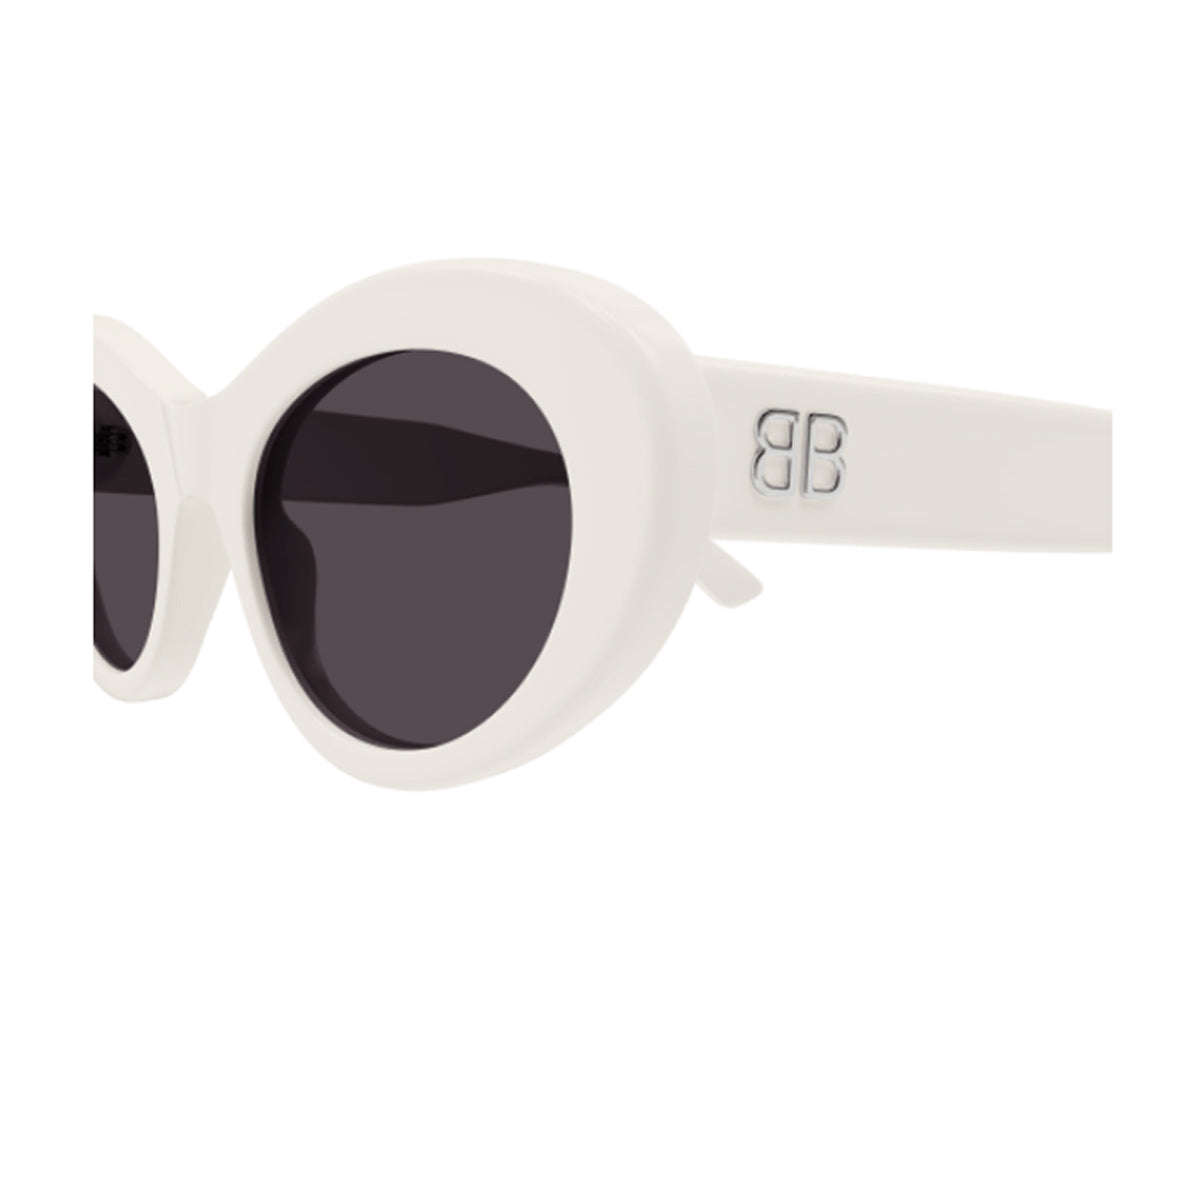 BB0294S 003-Occhiali da sole-Balenciaga-Balenciaga svela la sua ultima collezione di occhiali da sole, contraddistinta da un'audace estetica contemporanea. Questa linea si distingue per le forme oversize e le geometrie uniche, offrendo un'autentica dichiarazione di stile ideale per chi cerca un accessorio moderno e sofisticato per arricchire il proprio outfit. In particolare , questo modello BB0294S fa parte della nuova linea, presenta una forma ovale e delicata nei lineamenti in acetato. La novità assoluta